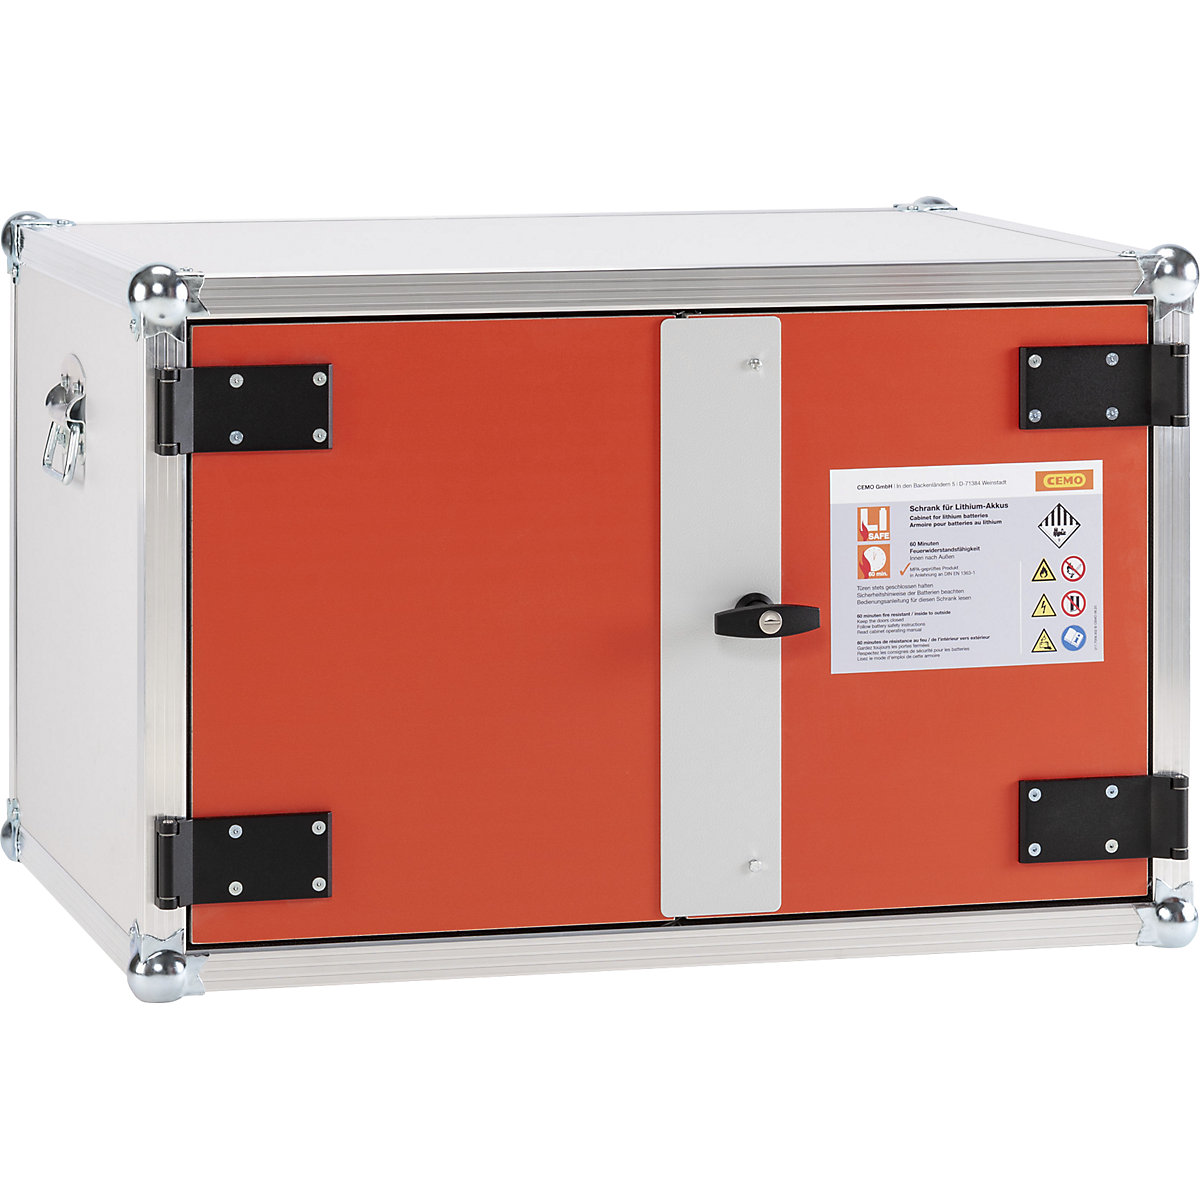 FWF 60 biztonsági akkumulátortöltő szekrény - CEMO